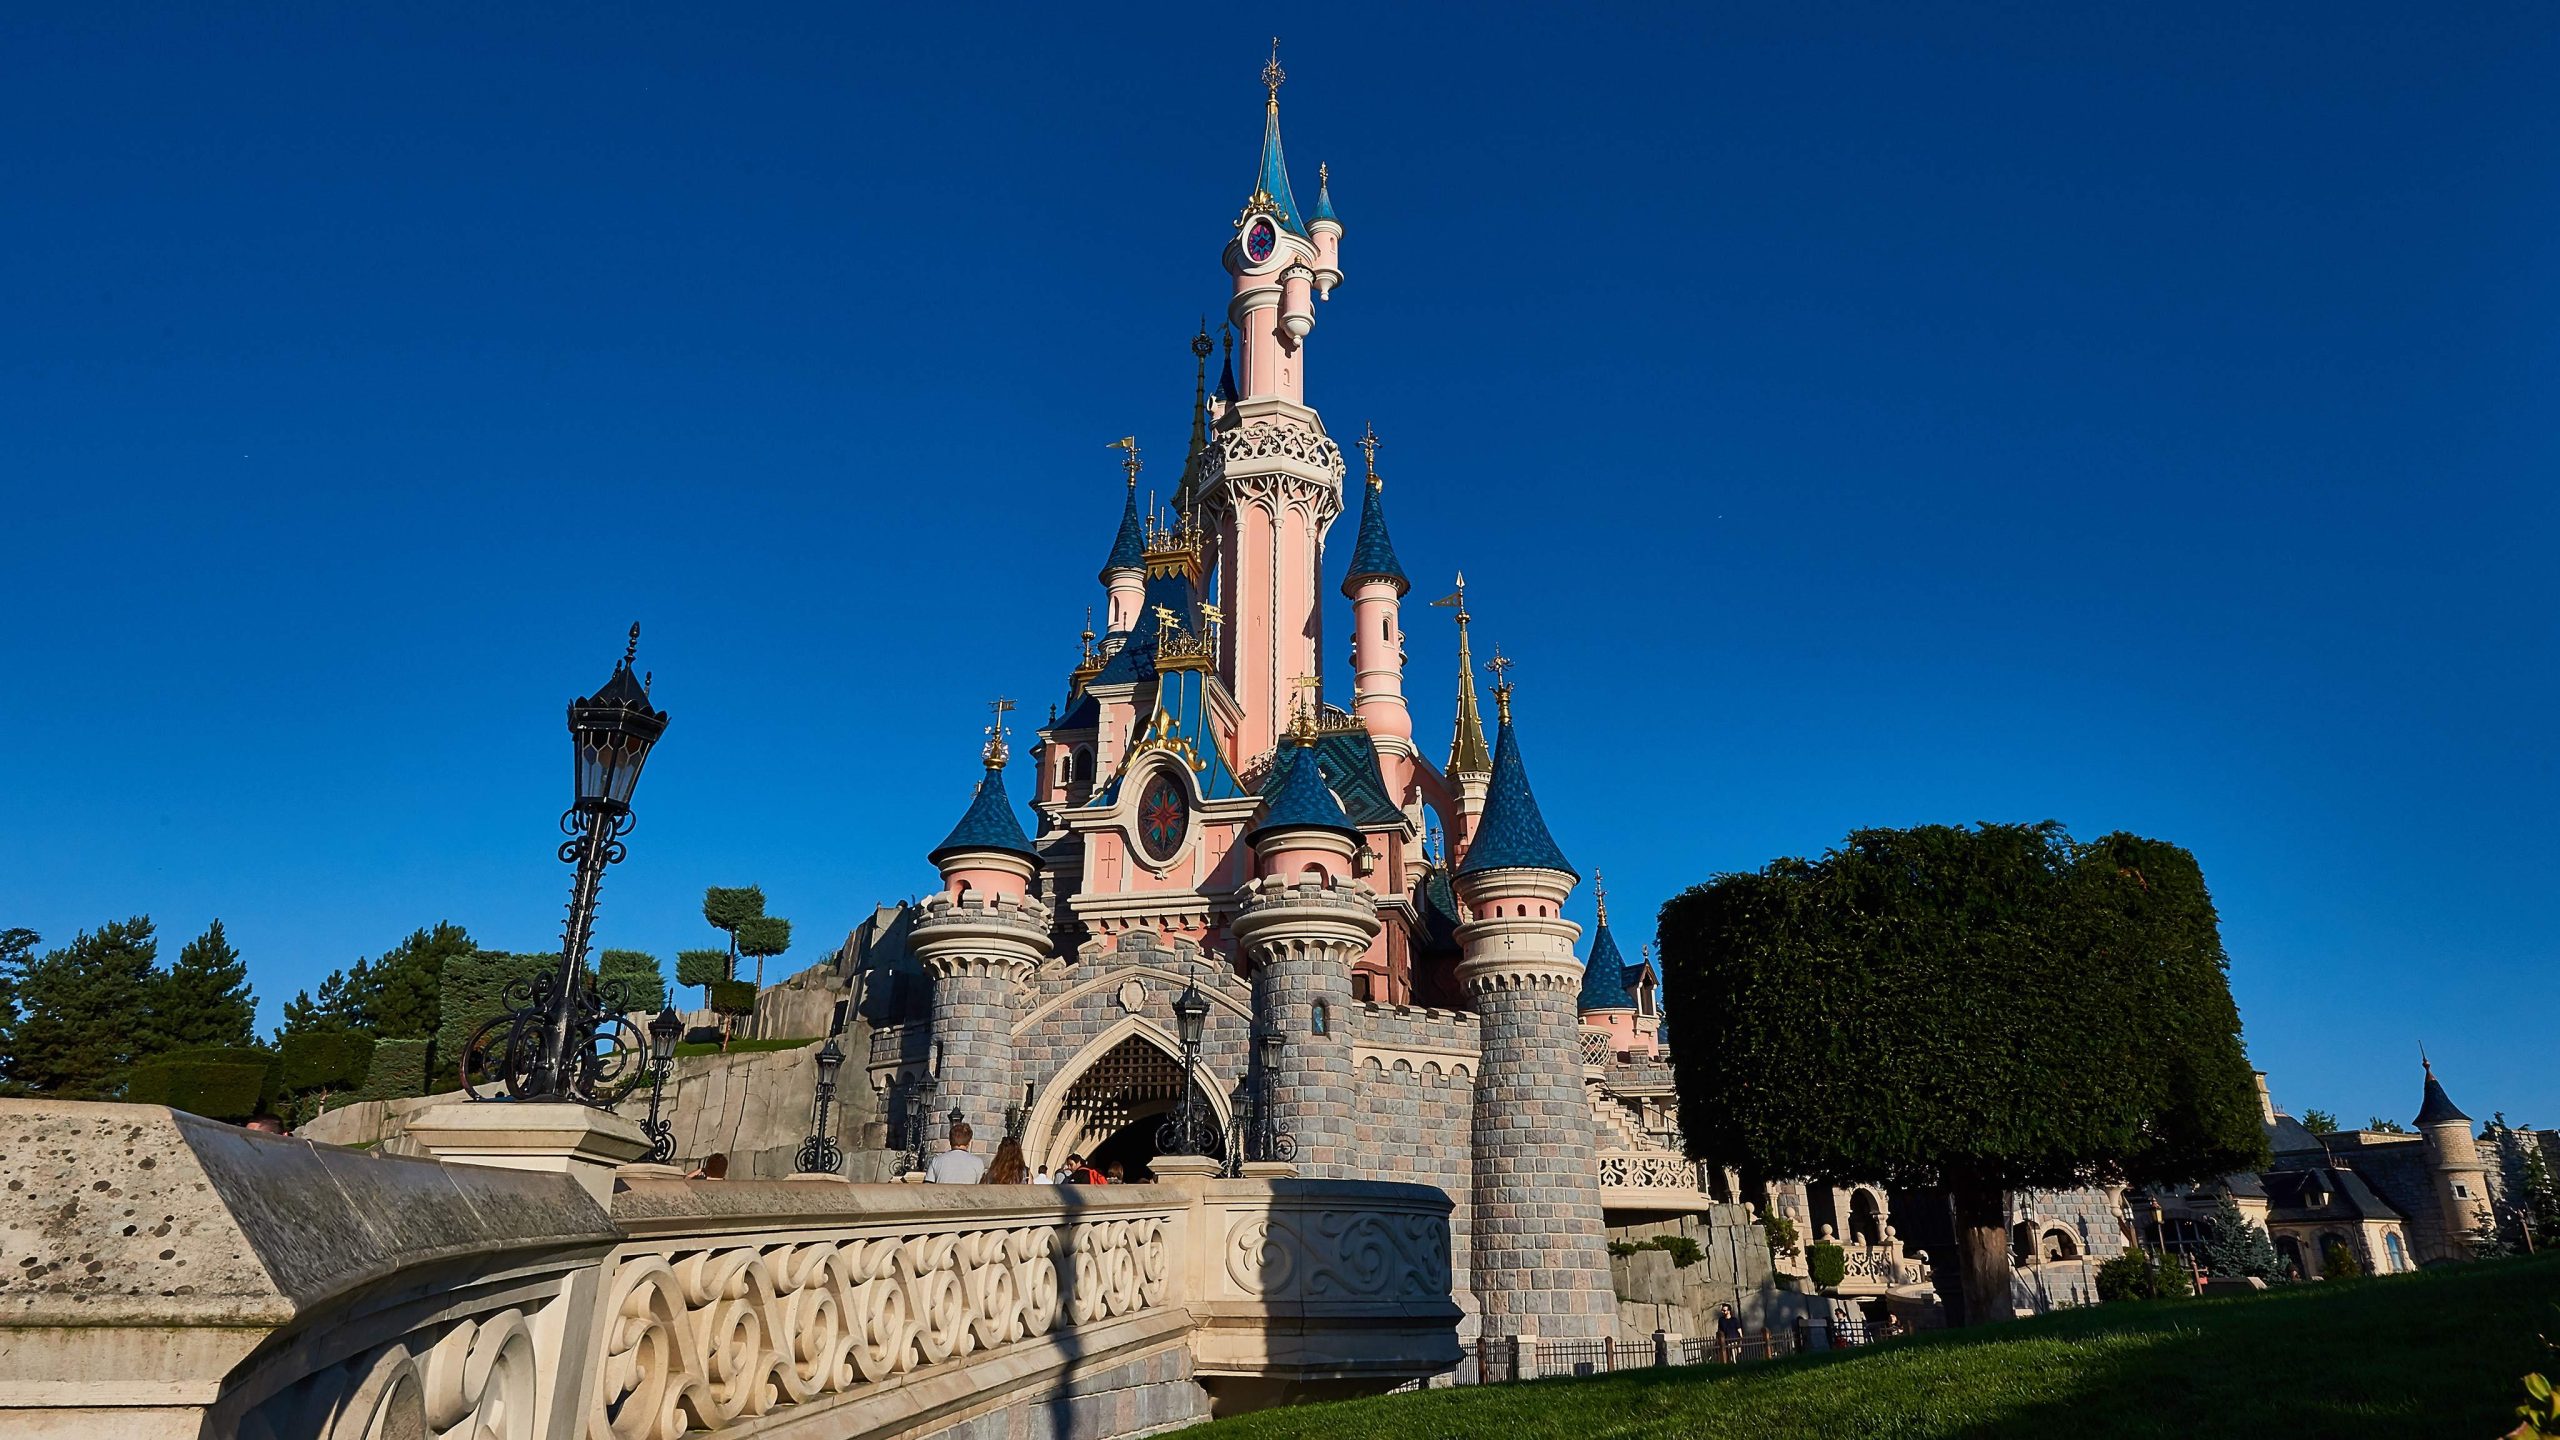 Visuale destra del Castello della Bella Addormentata a Disneyland Paris